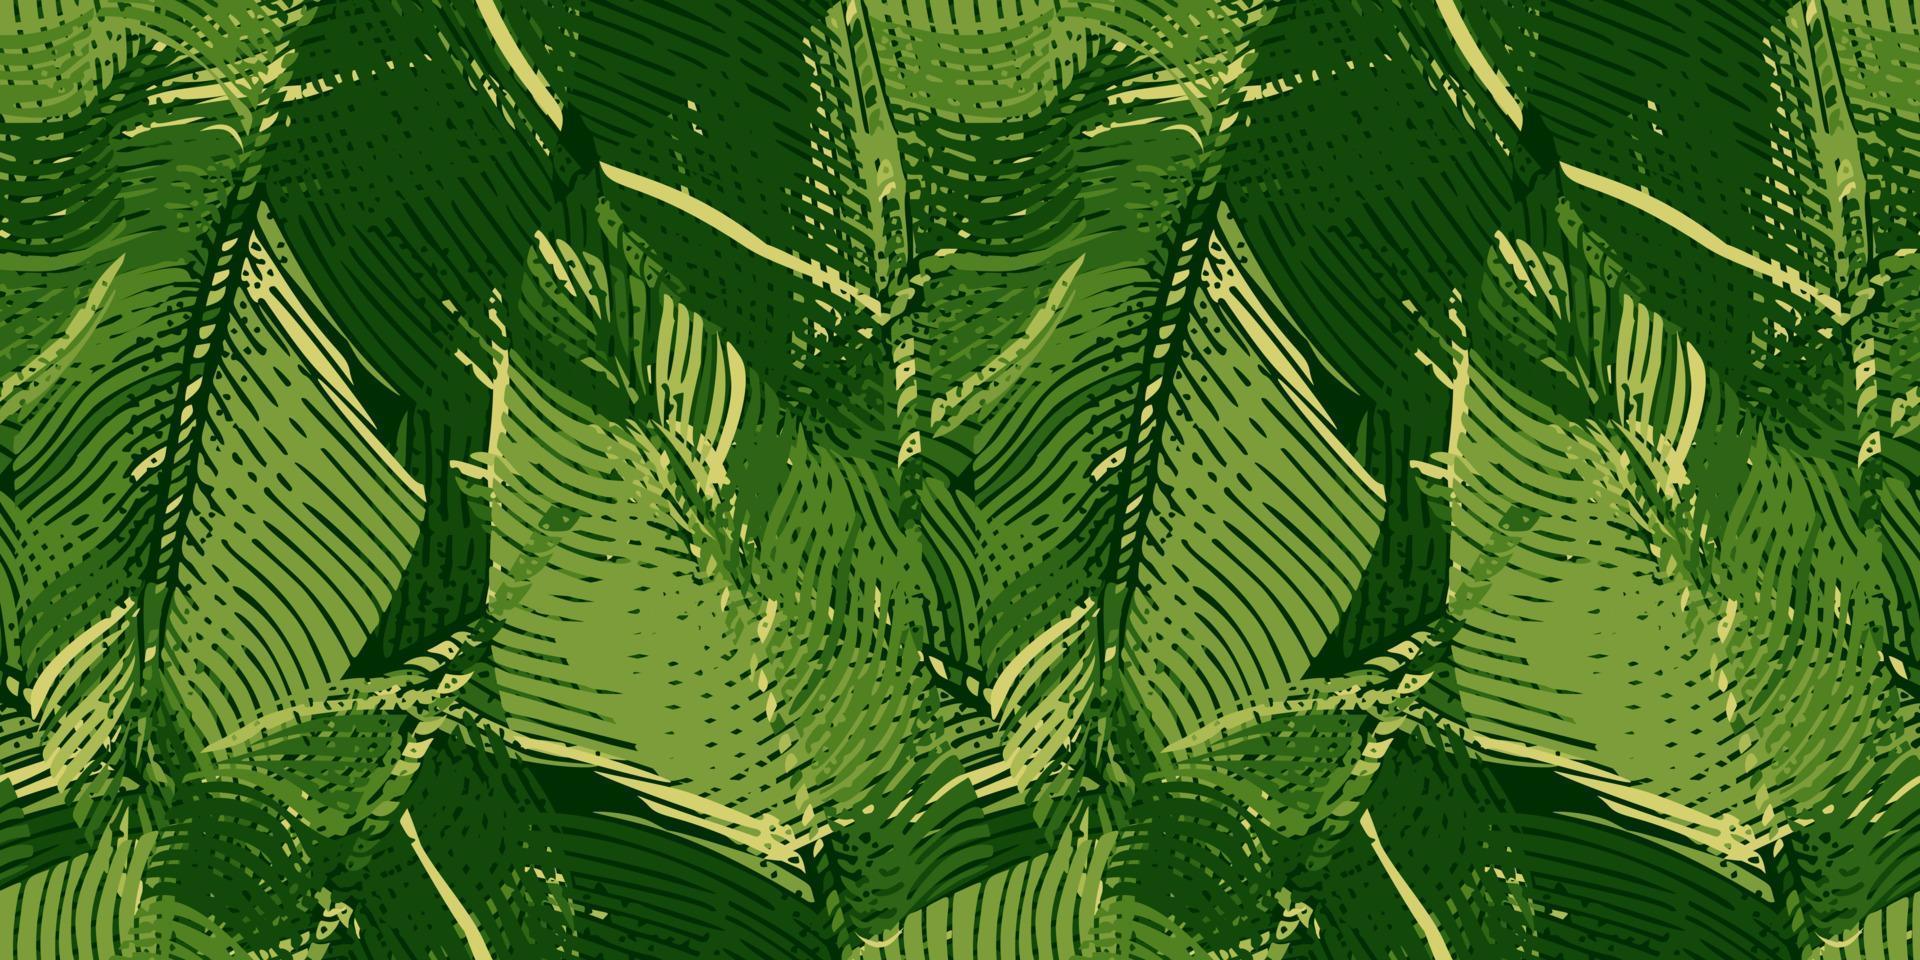 abstracte bananenblad naadloze patroon. gravure camouflage botanische achtergrond. vector